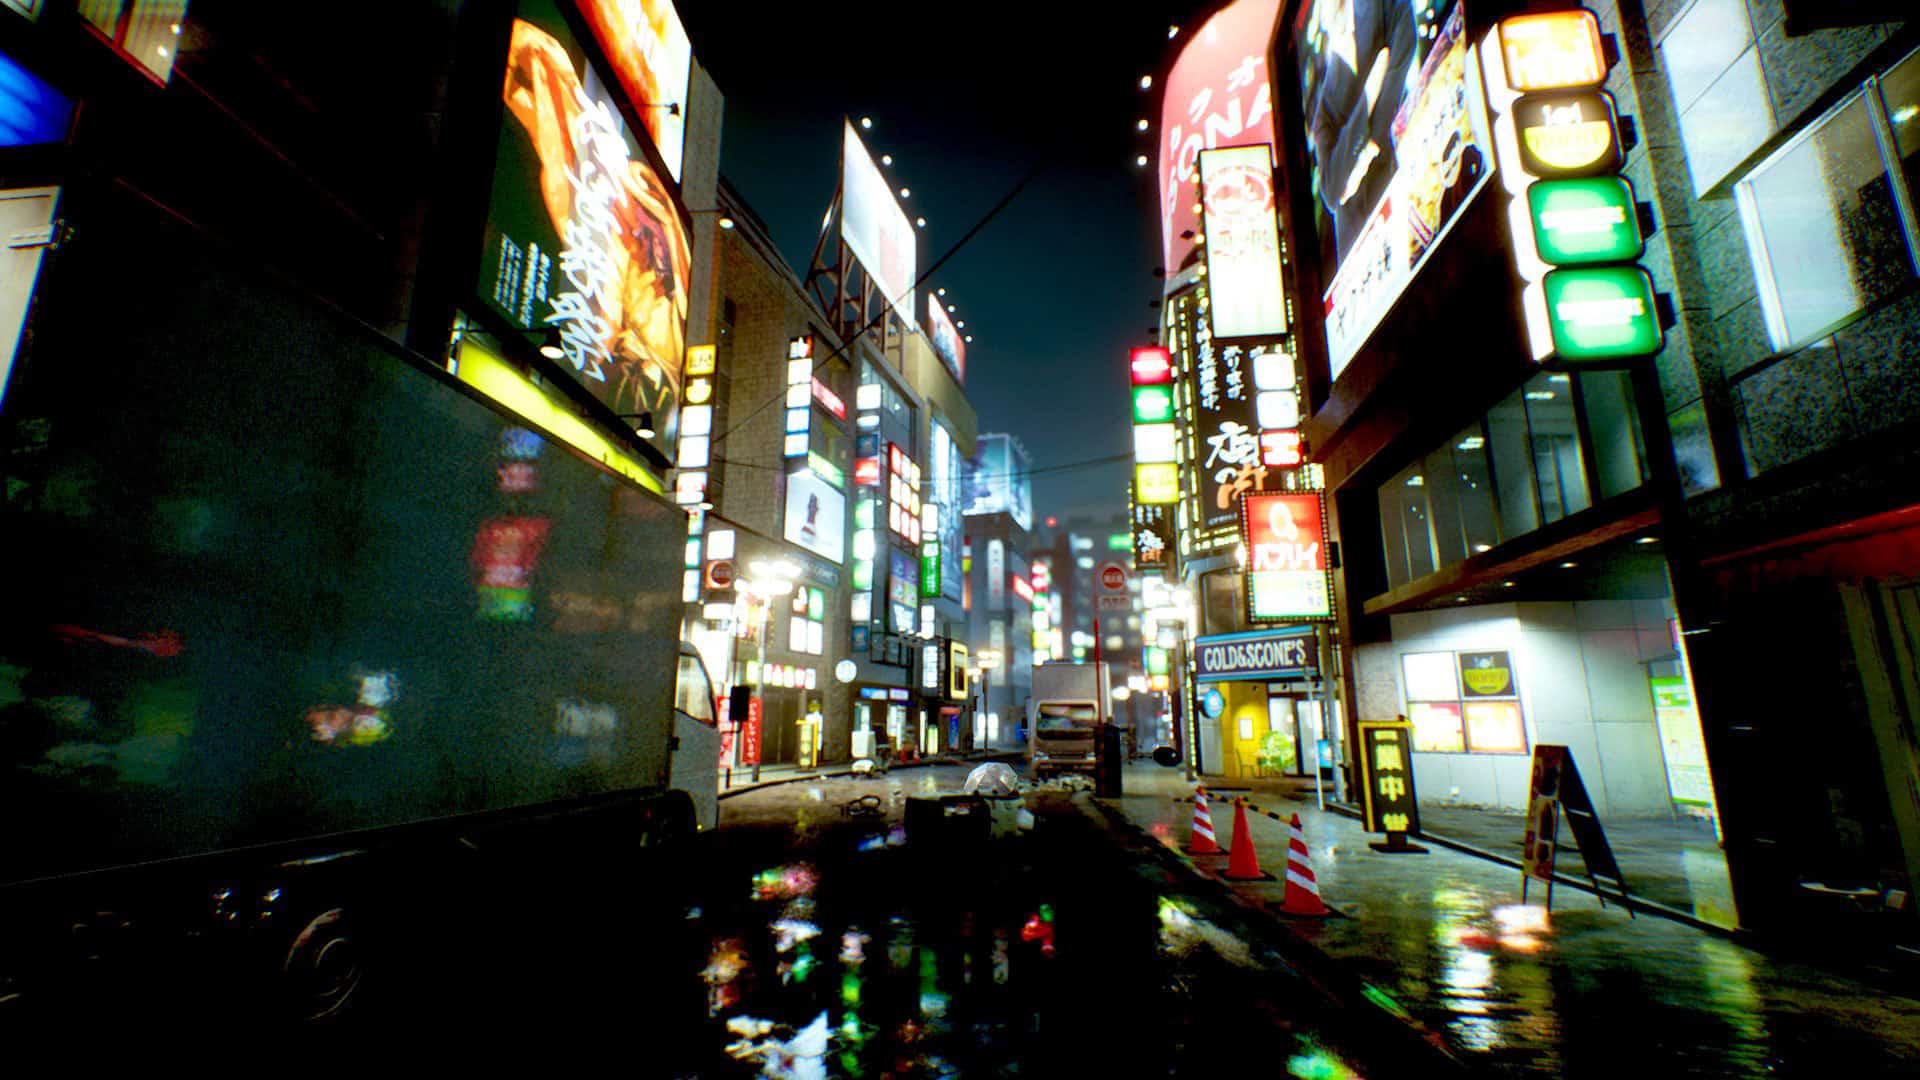 Ghostwire Tokyo bietet eine ganz besondere Atmosphäre und es spielt sogar in Tokyo. Mystische Wesen die an jeder Ecke auf einen Lauern, dunkle Straßen mit beeindruckenden Reflexionen und Lichtern. Ein wares Fest für das Auge.